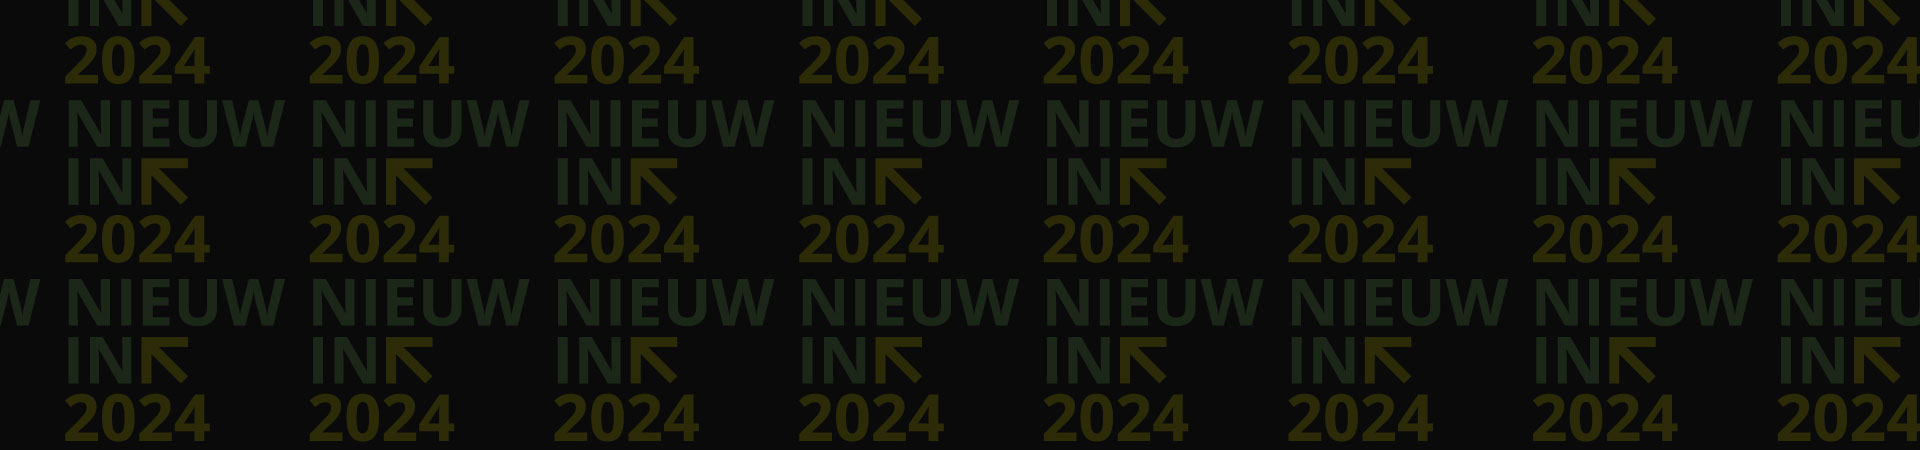 Nieuw In 2024 